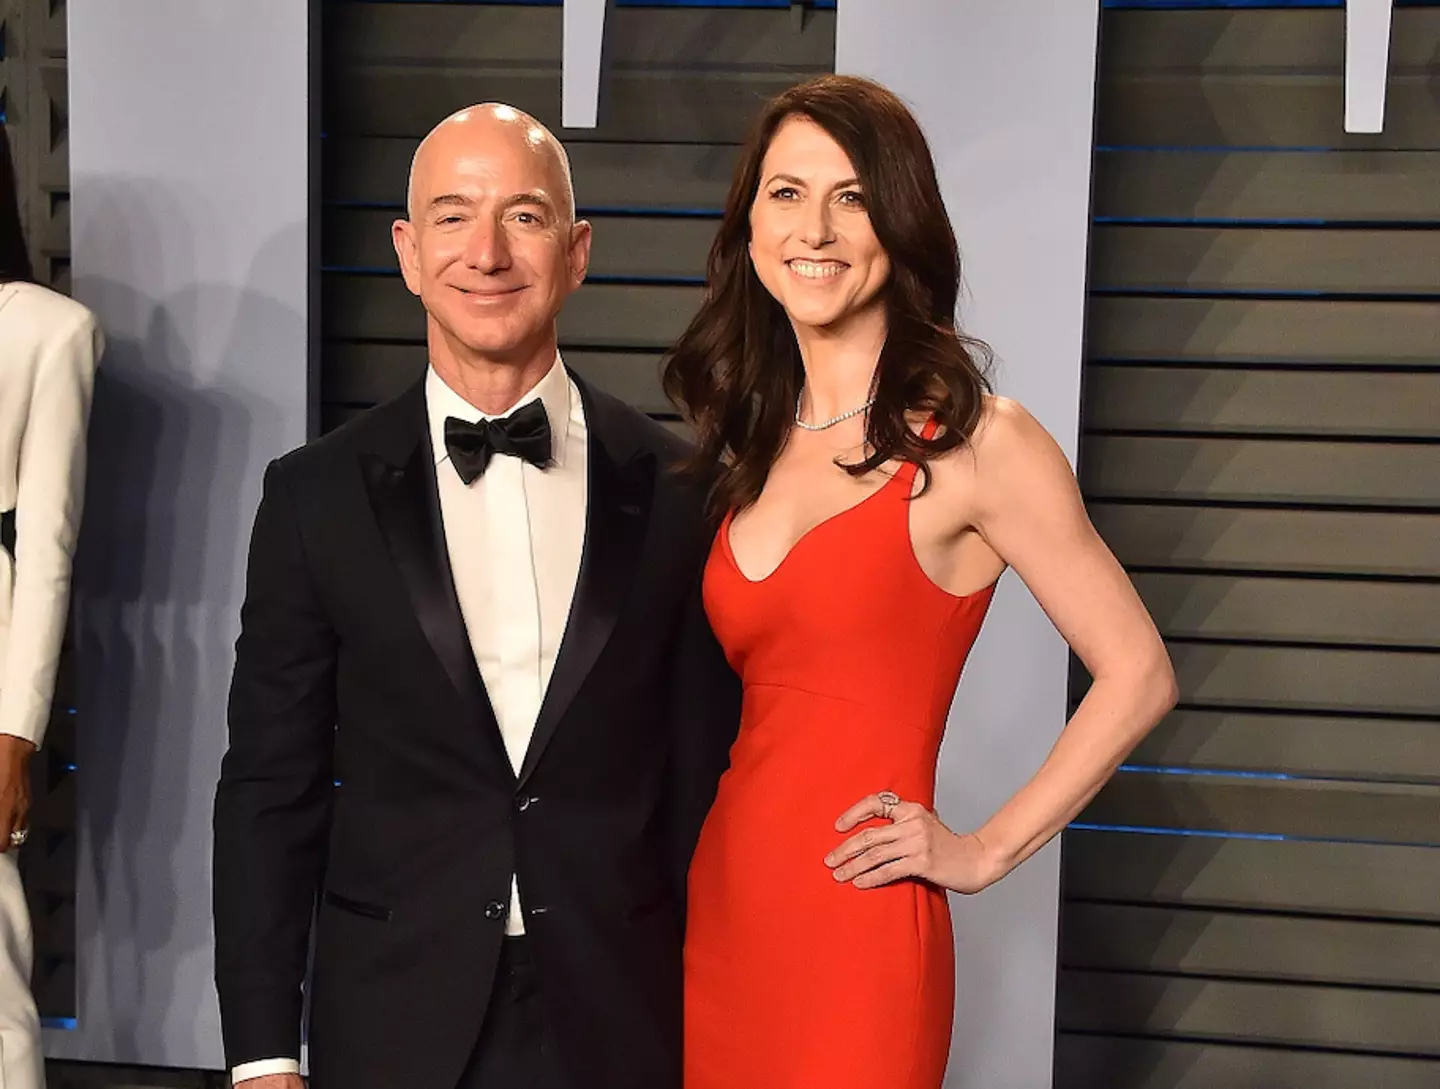 Scott divorced her first husband, Jeff Bezos, in 2019.